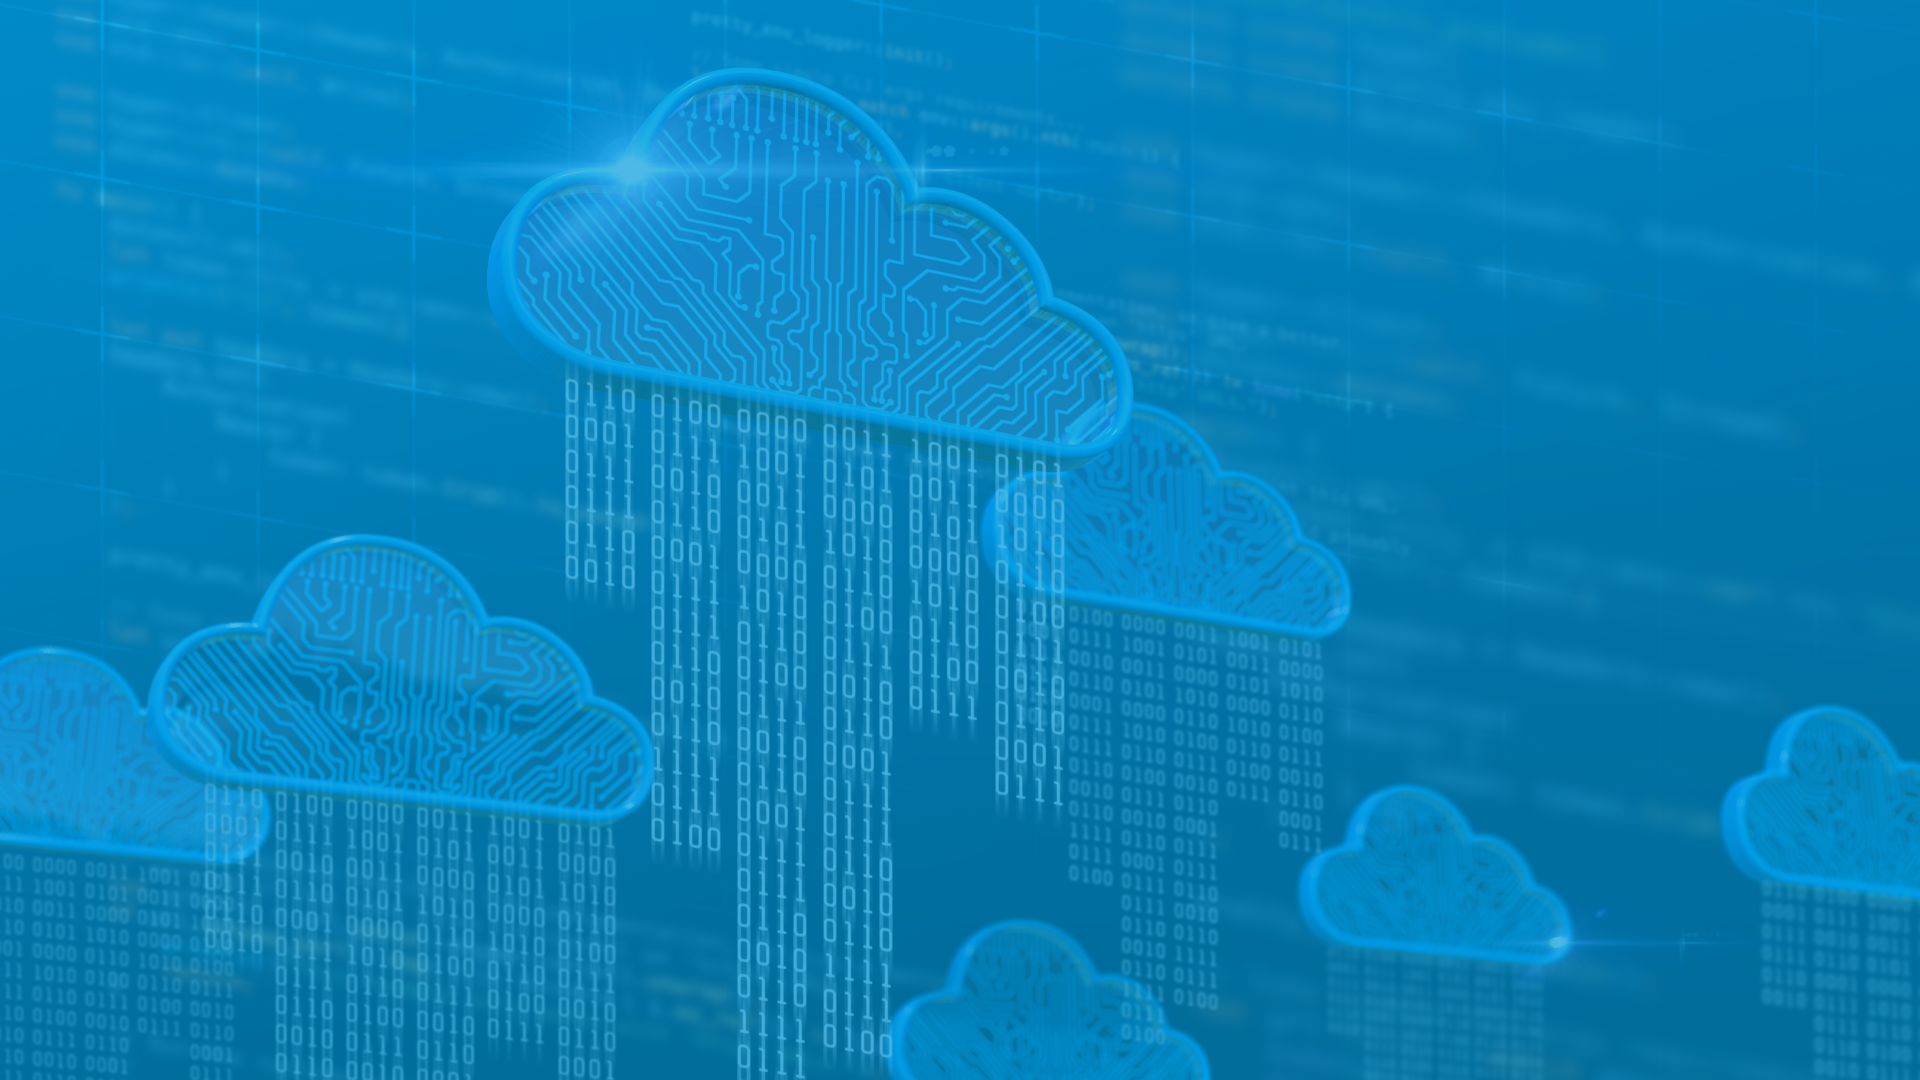 Consultoria cloud computing: qual o melhor caminho para a nuvem?